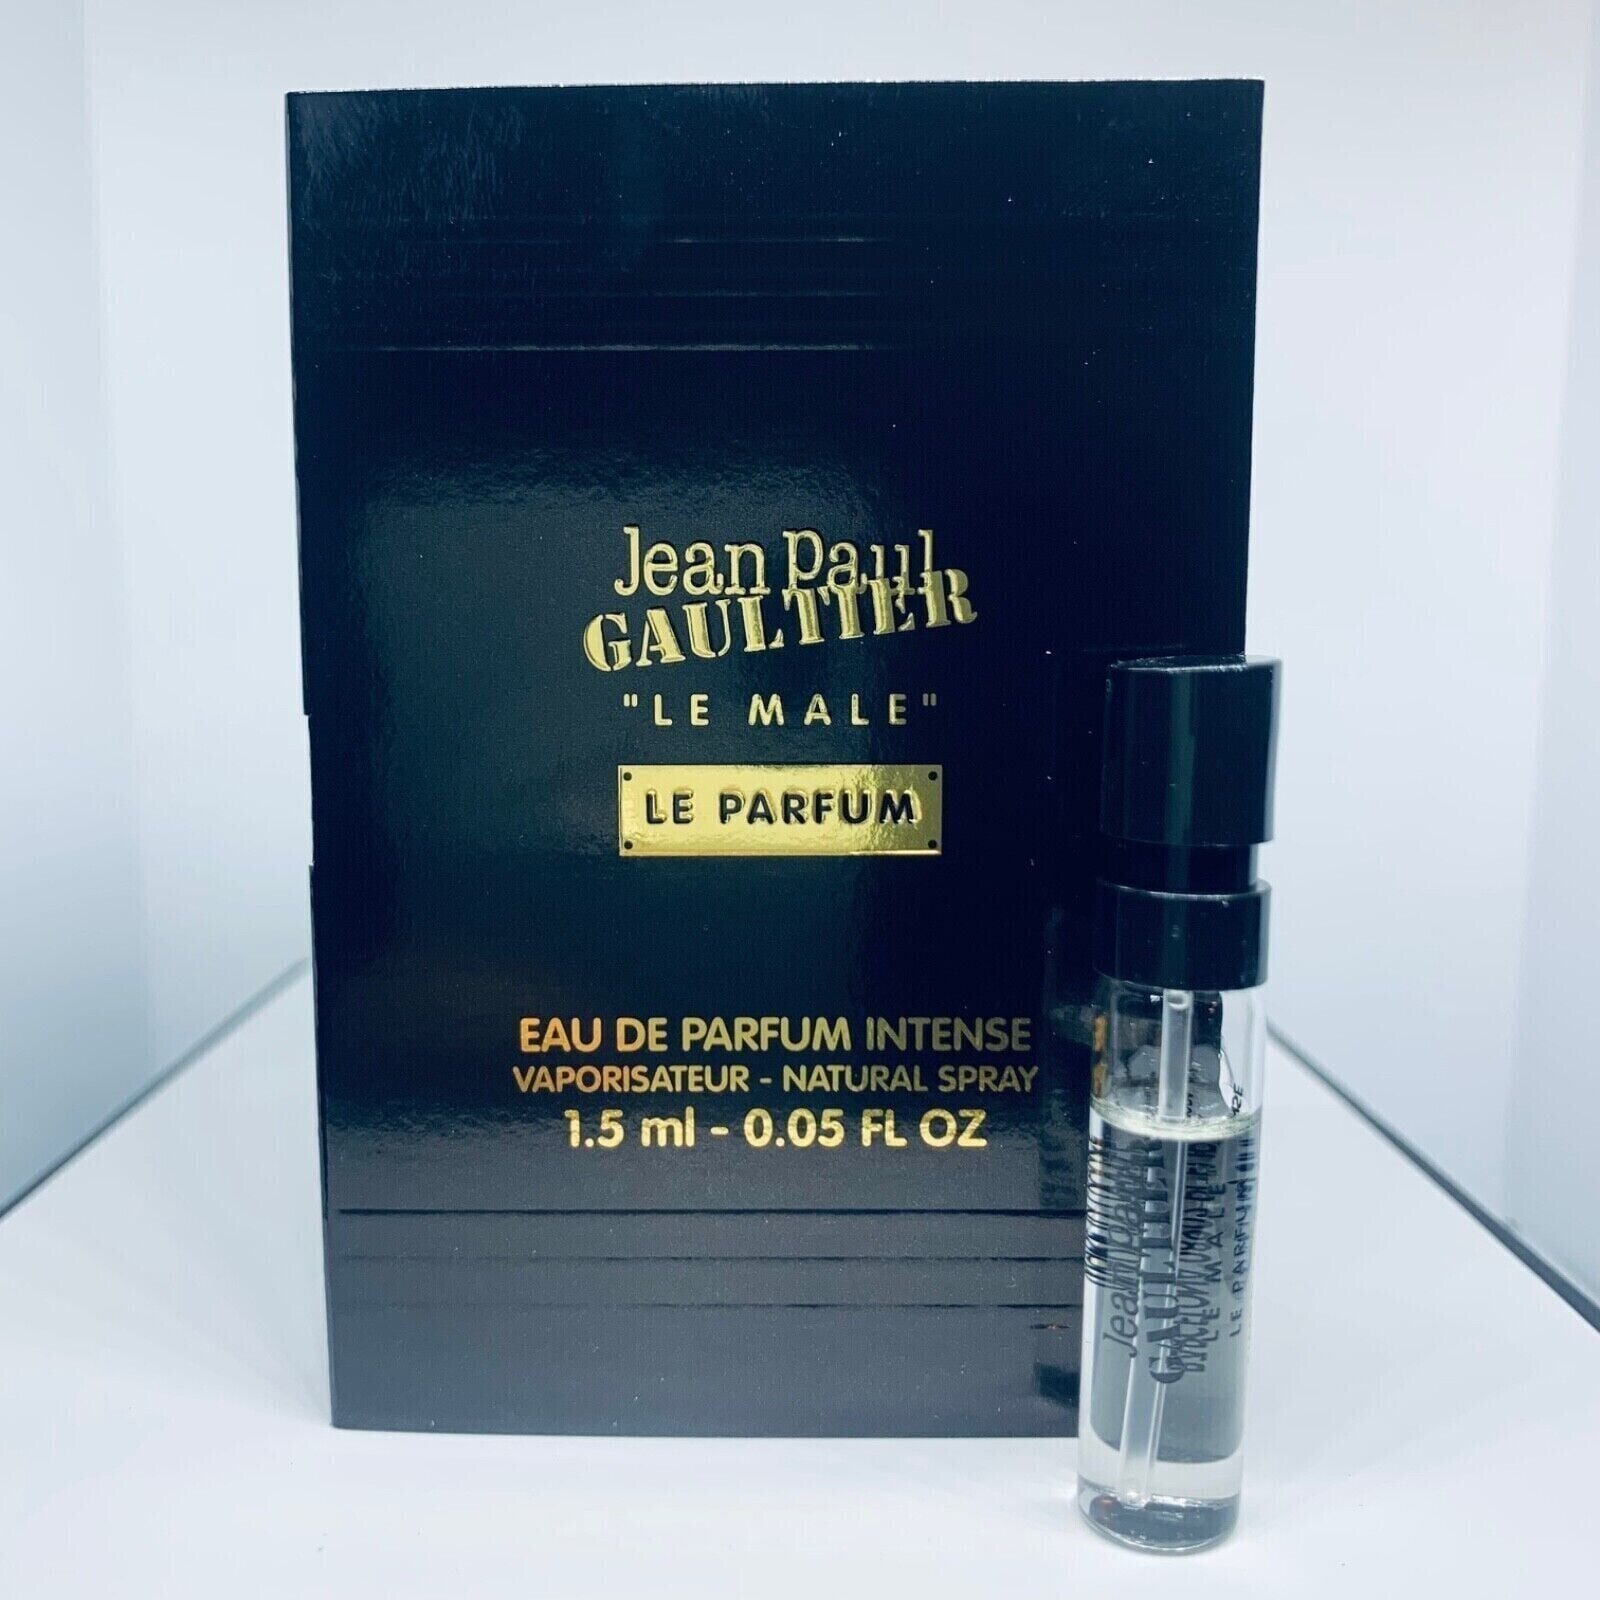 Jean Paul Gaultier Le Male Le Parfum Edp Intense Sample 1.5m L